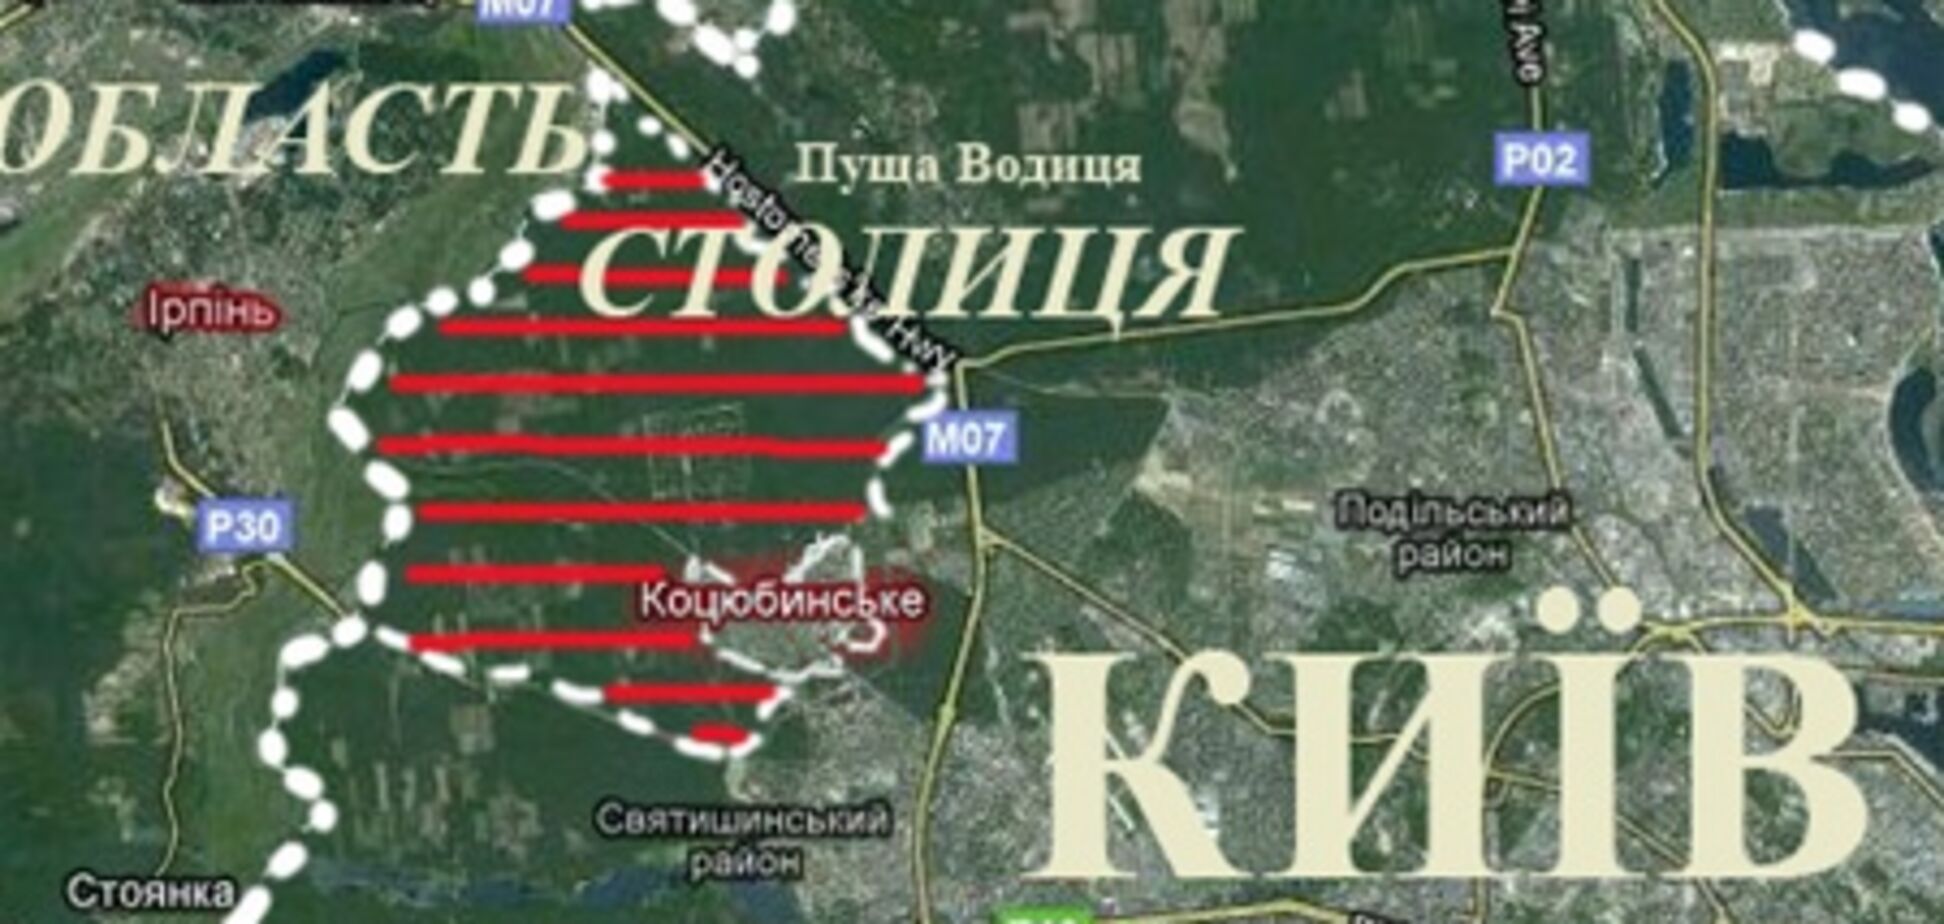 Зачем депутатам Коцюбинского поссовета чужой лес? Правила воровства 